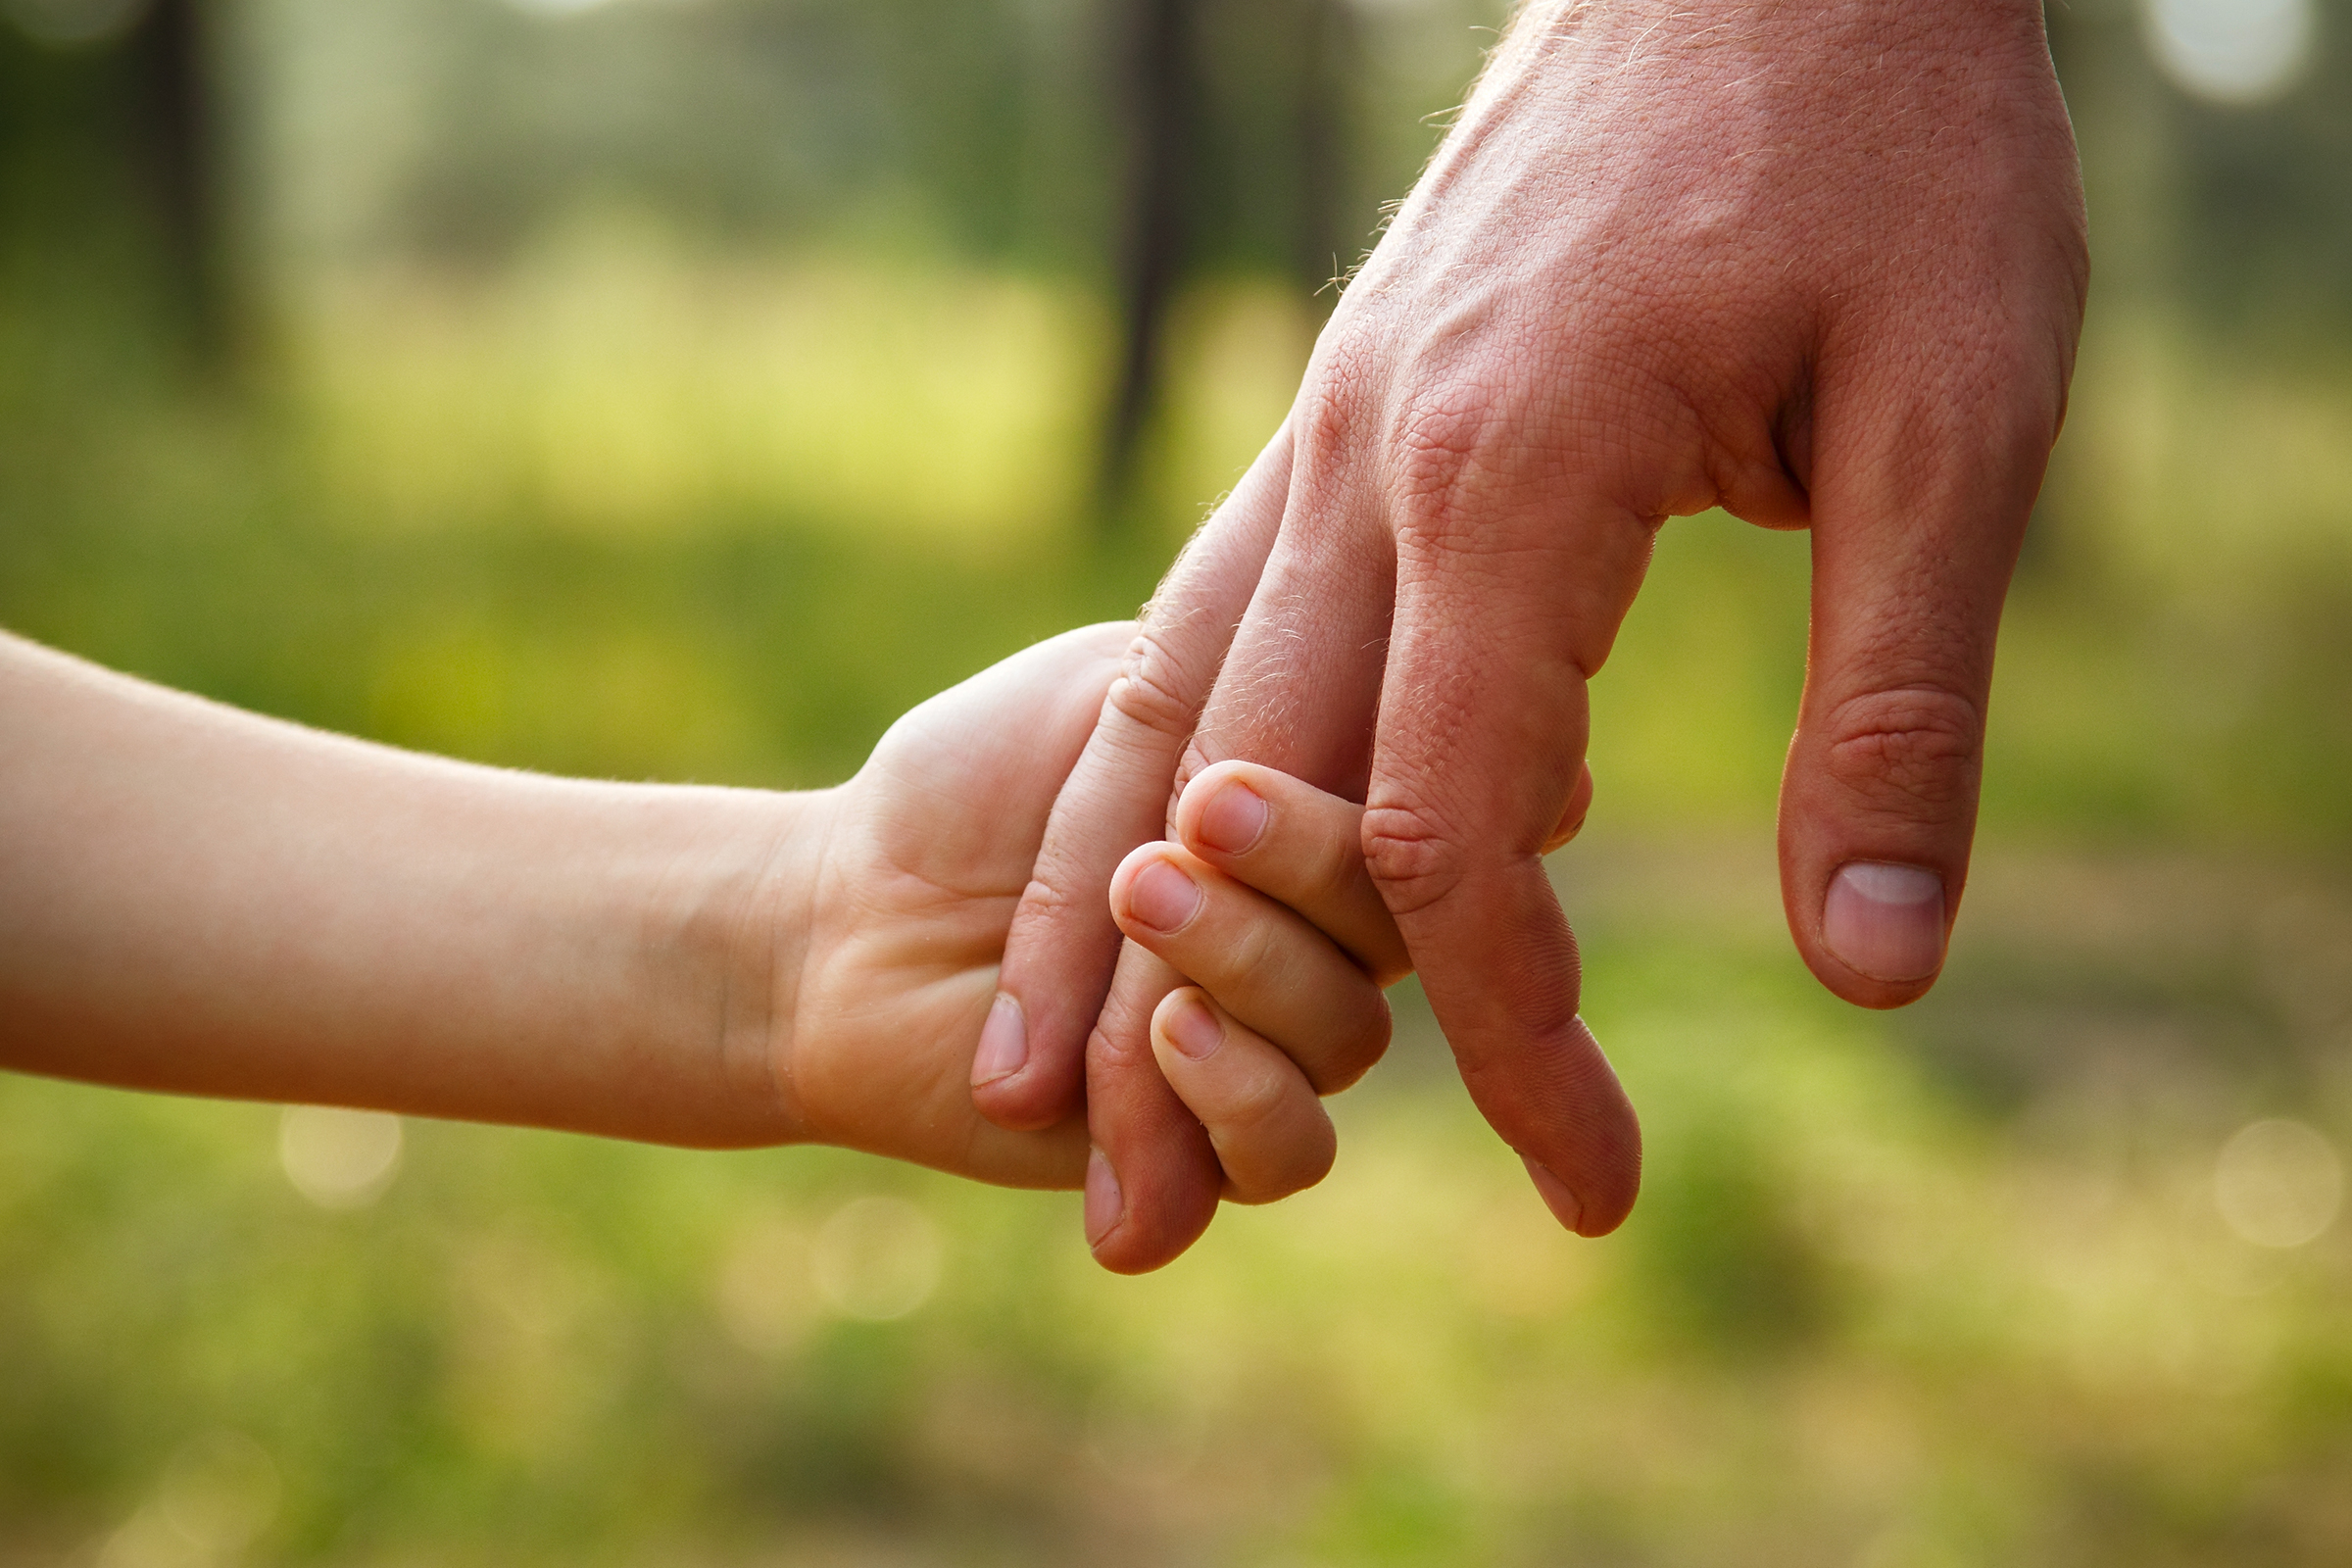 WEB-FATHER-CHILD-HANDS-Vita-Khorzhevska-Shutterstock_108189845